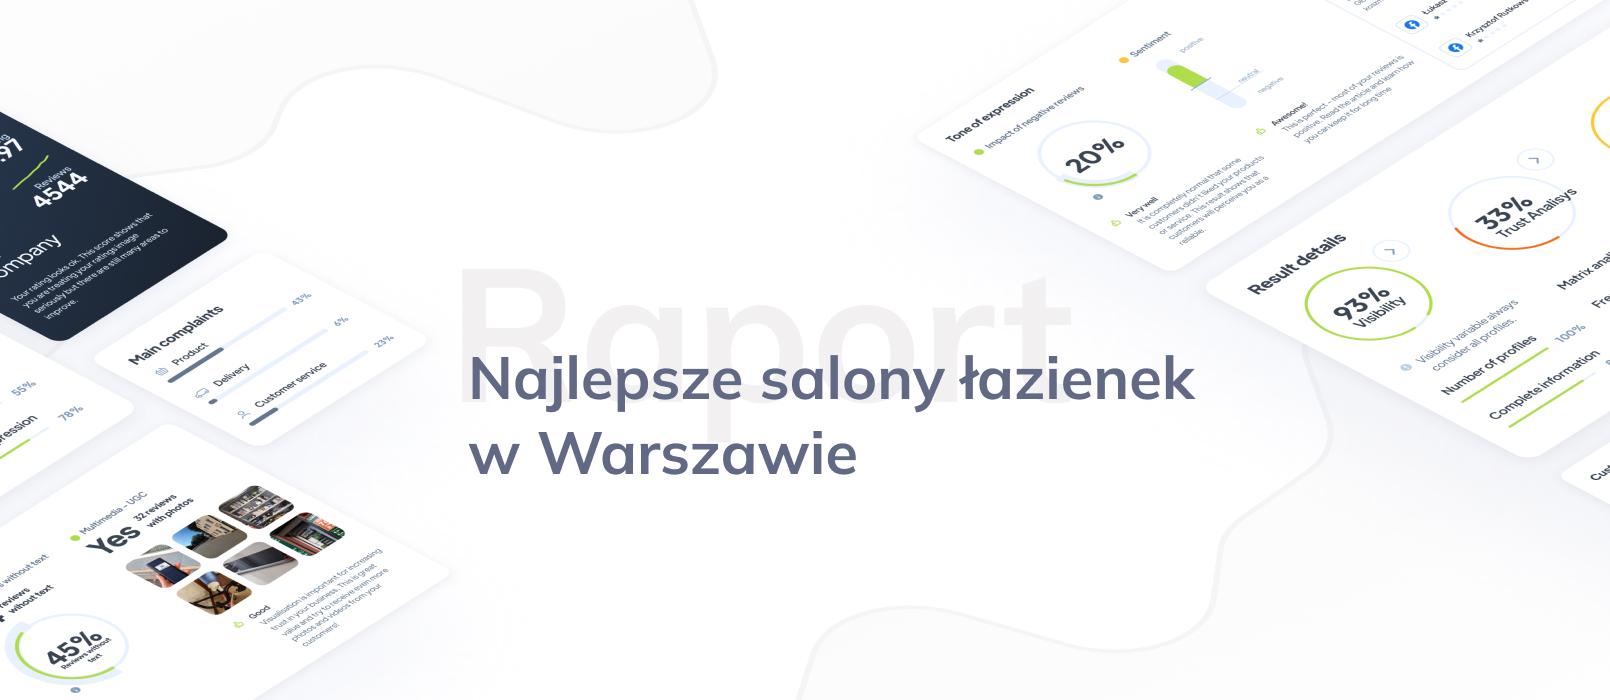 TOP 10 najlepszych salonów łazienkowych w Warszawie – ranking opinii klientów